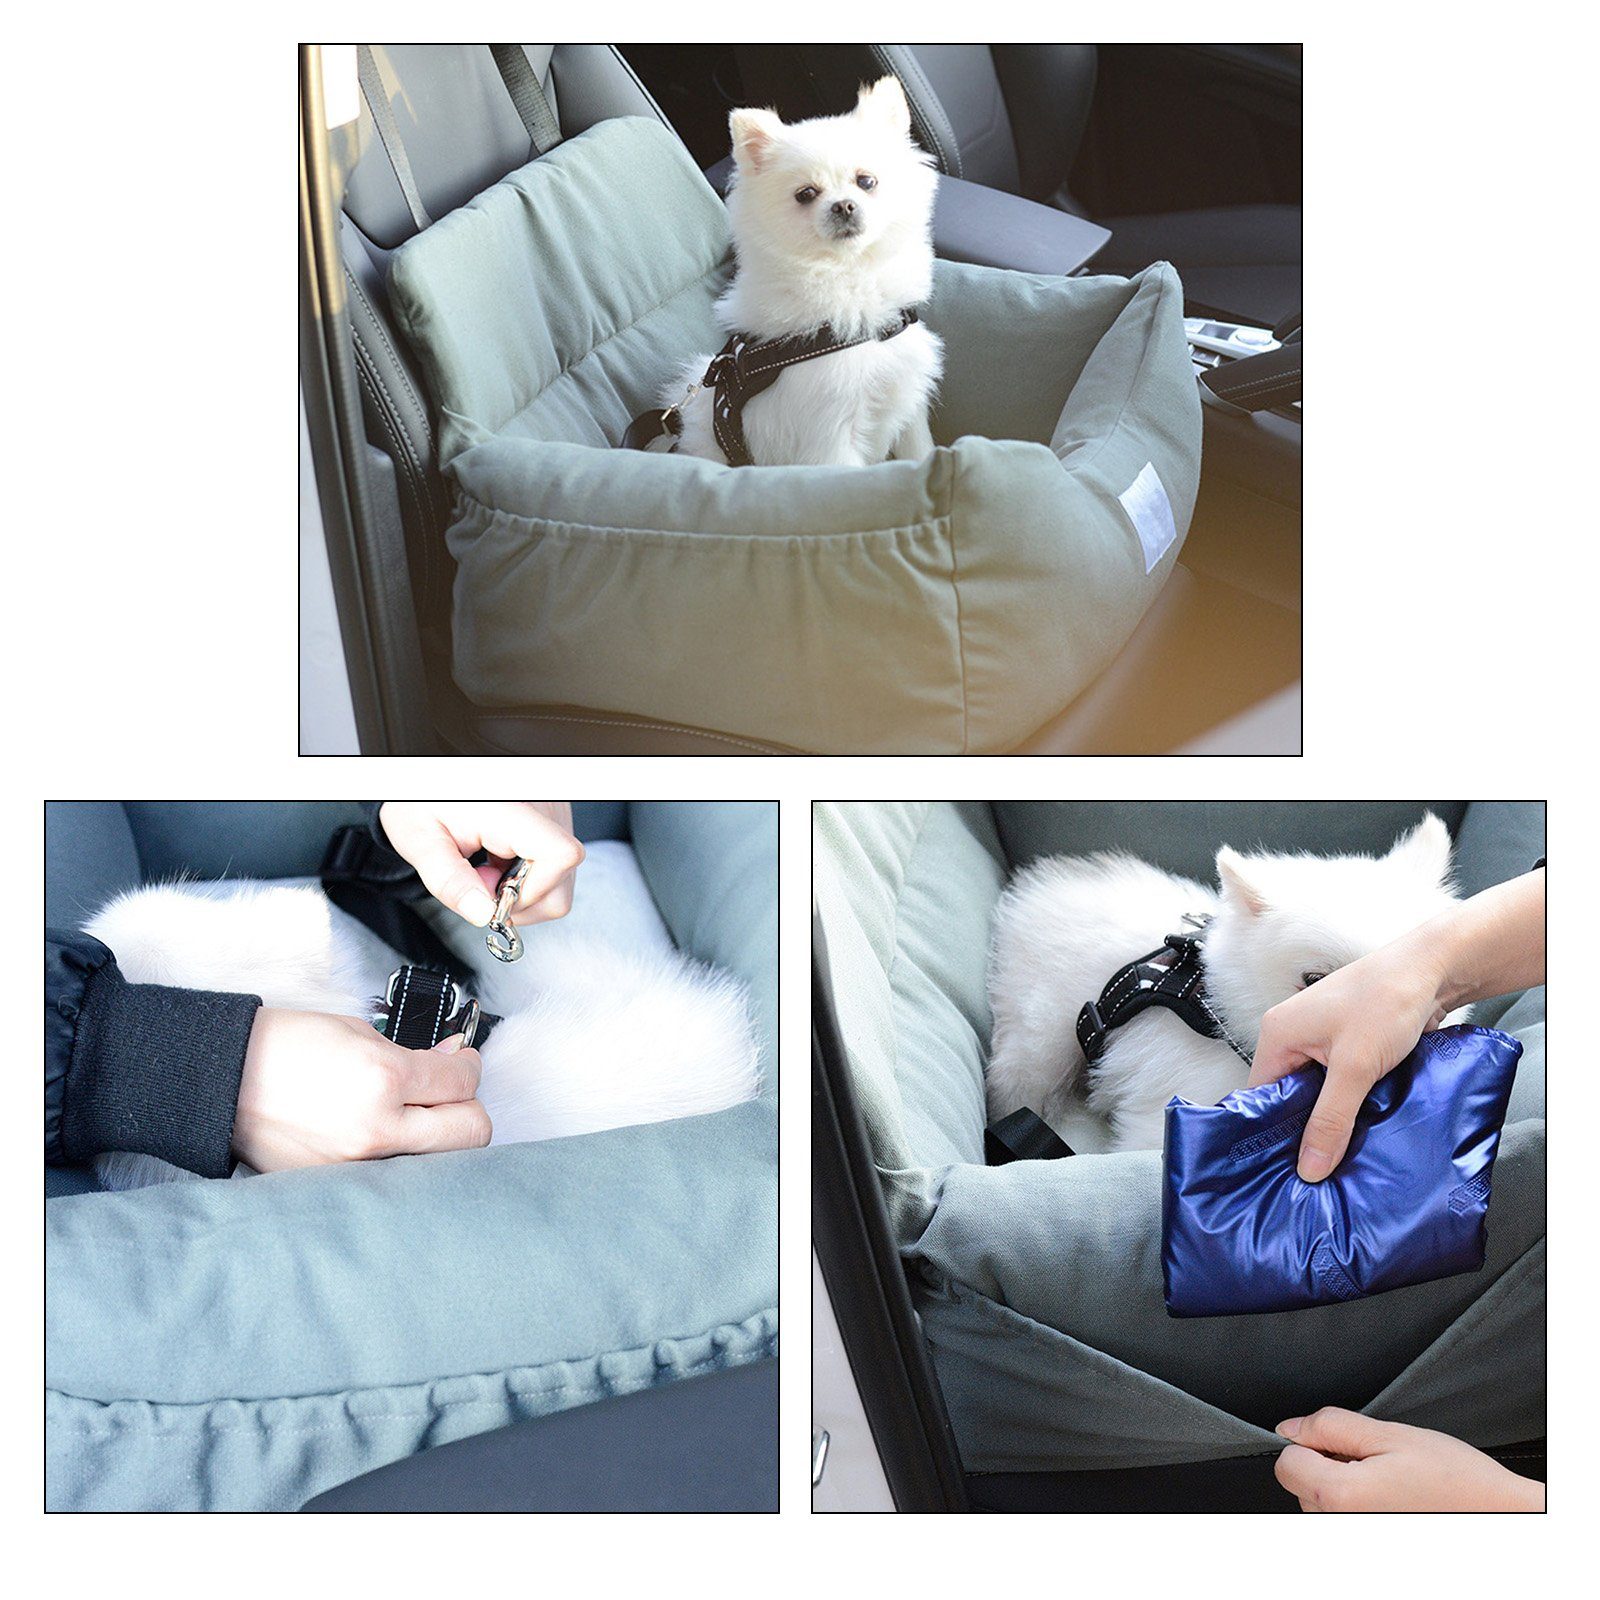 CALIYO Hunde-Autositz Hundesitz, Autositz für Hunde, Haustier-Autositz,  geeignet für alle Arten von Autos, multifunktionales Hundebett, STAURAUM:  Hundesitz verfügt über Aufbewahrungstaschen für kleine Gegenstände